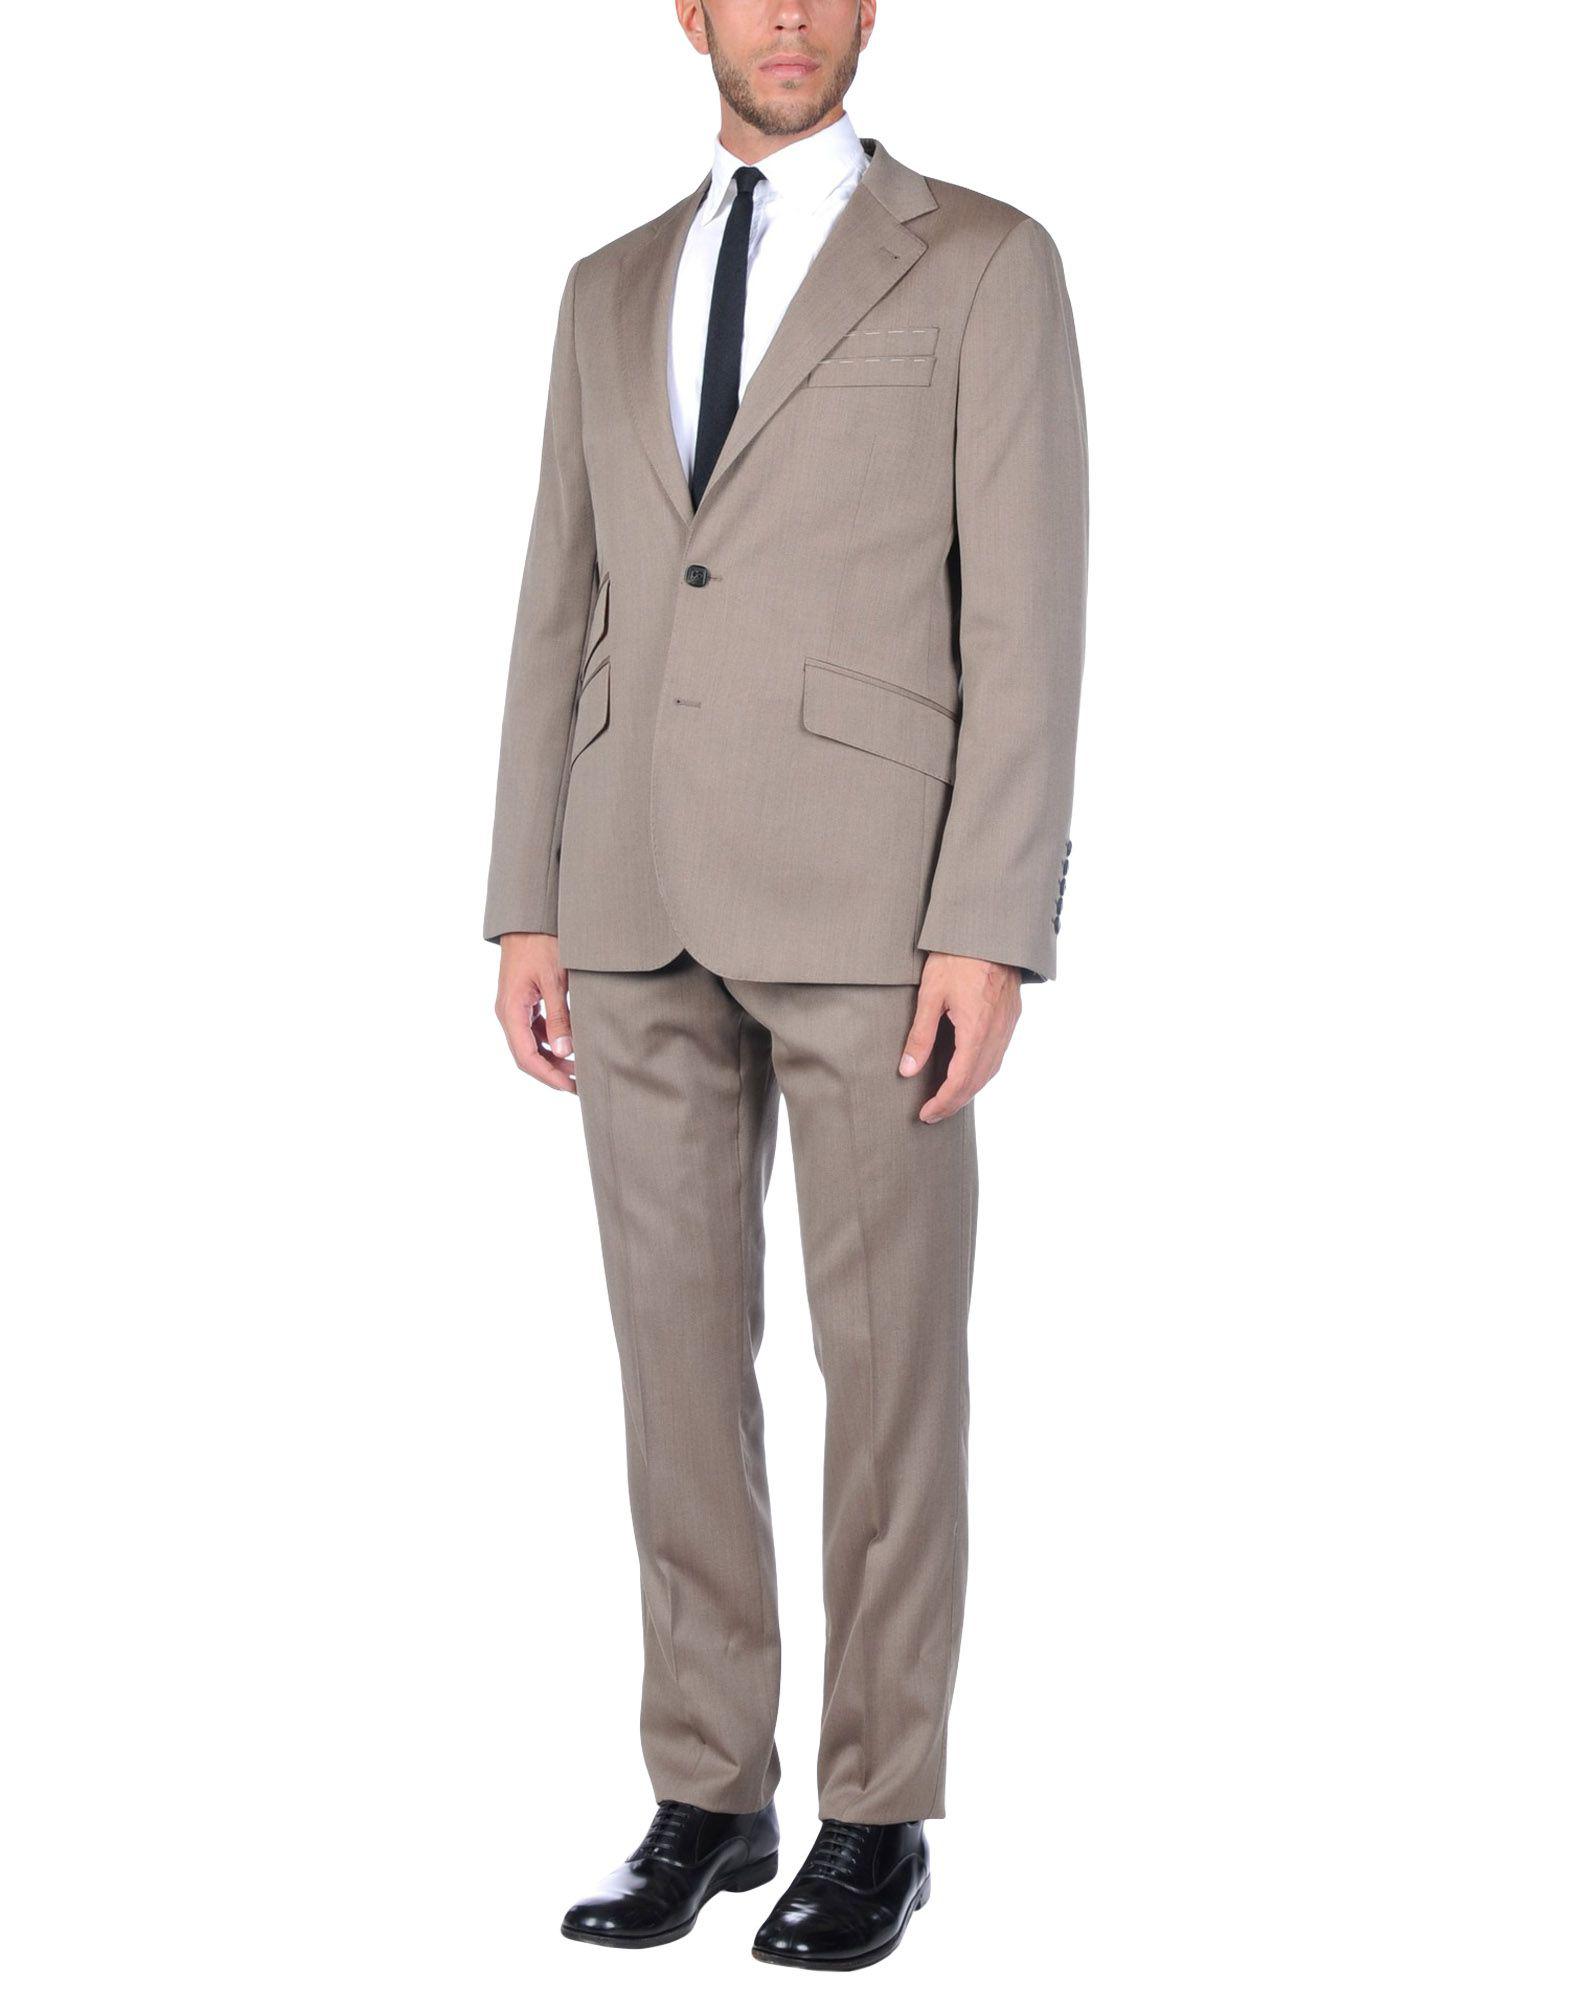 Lyst - Billionaire Suit in Natural for Men